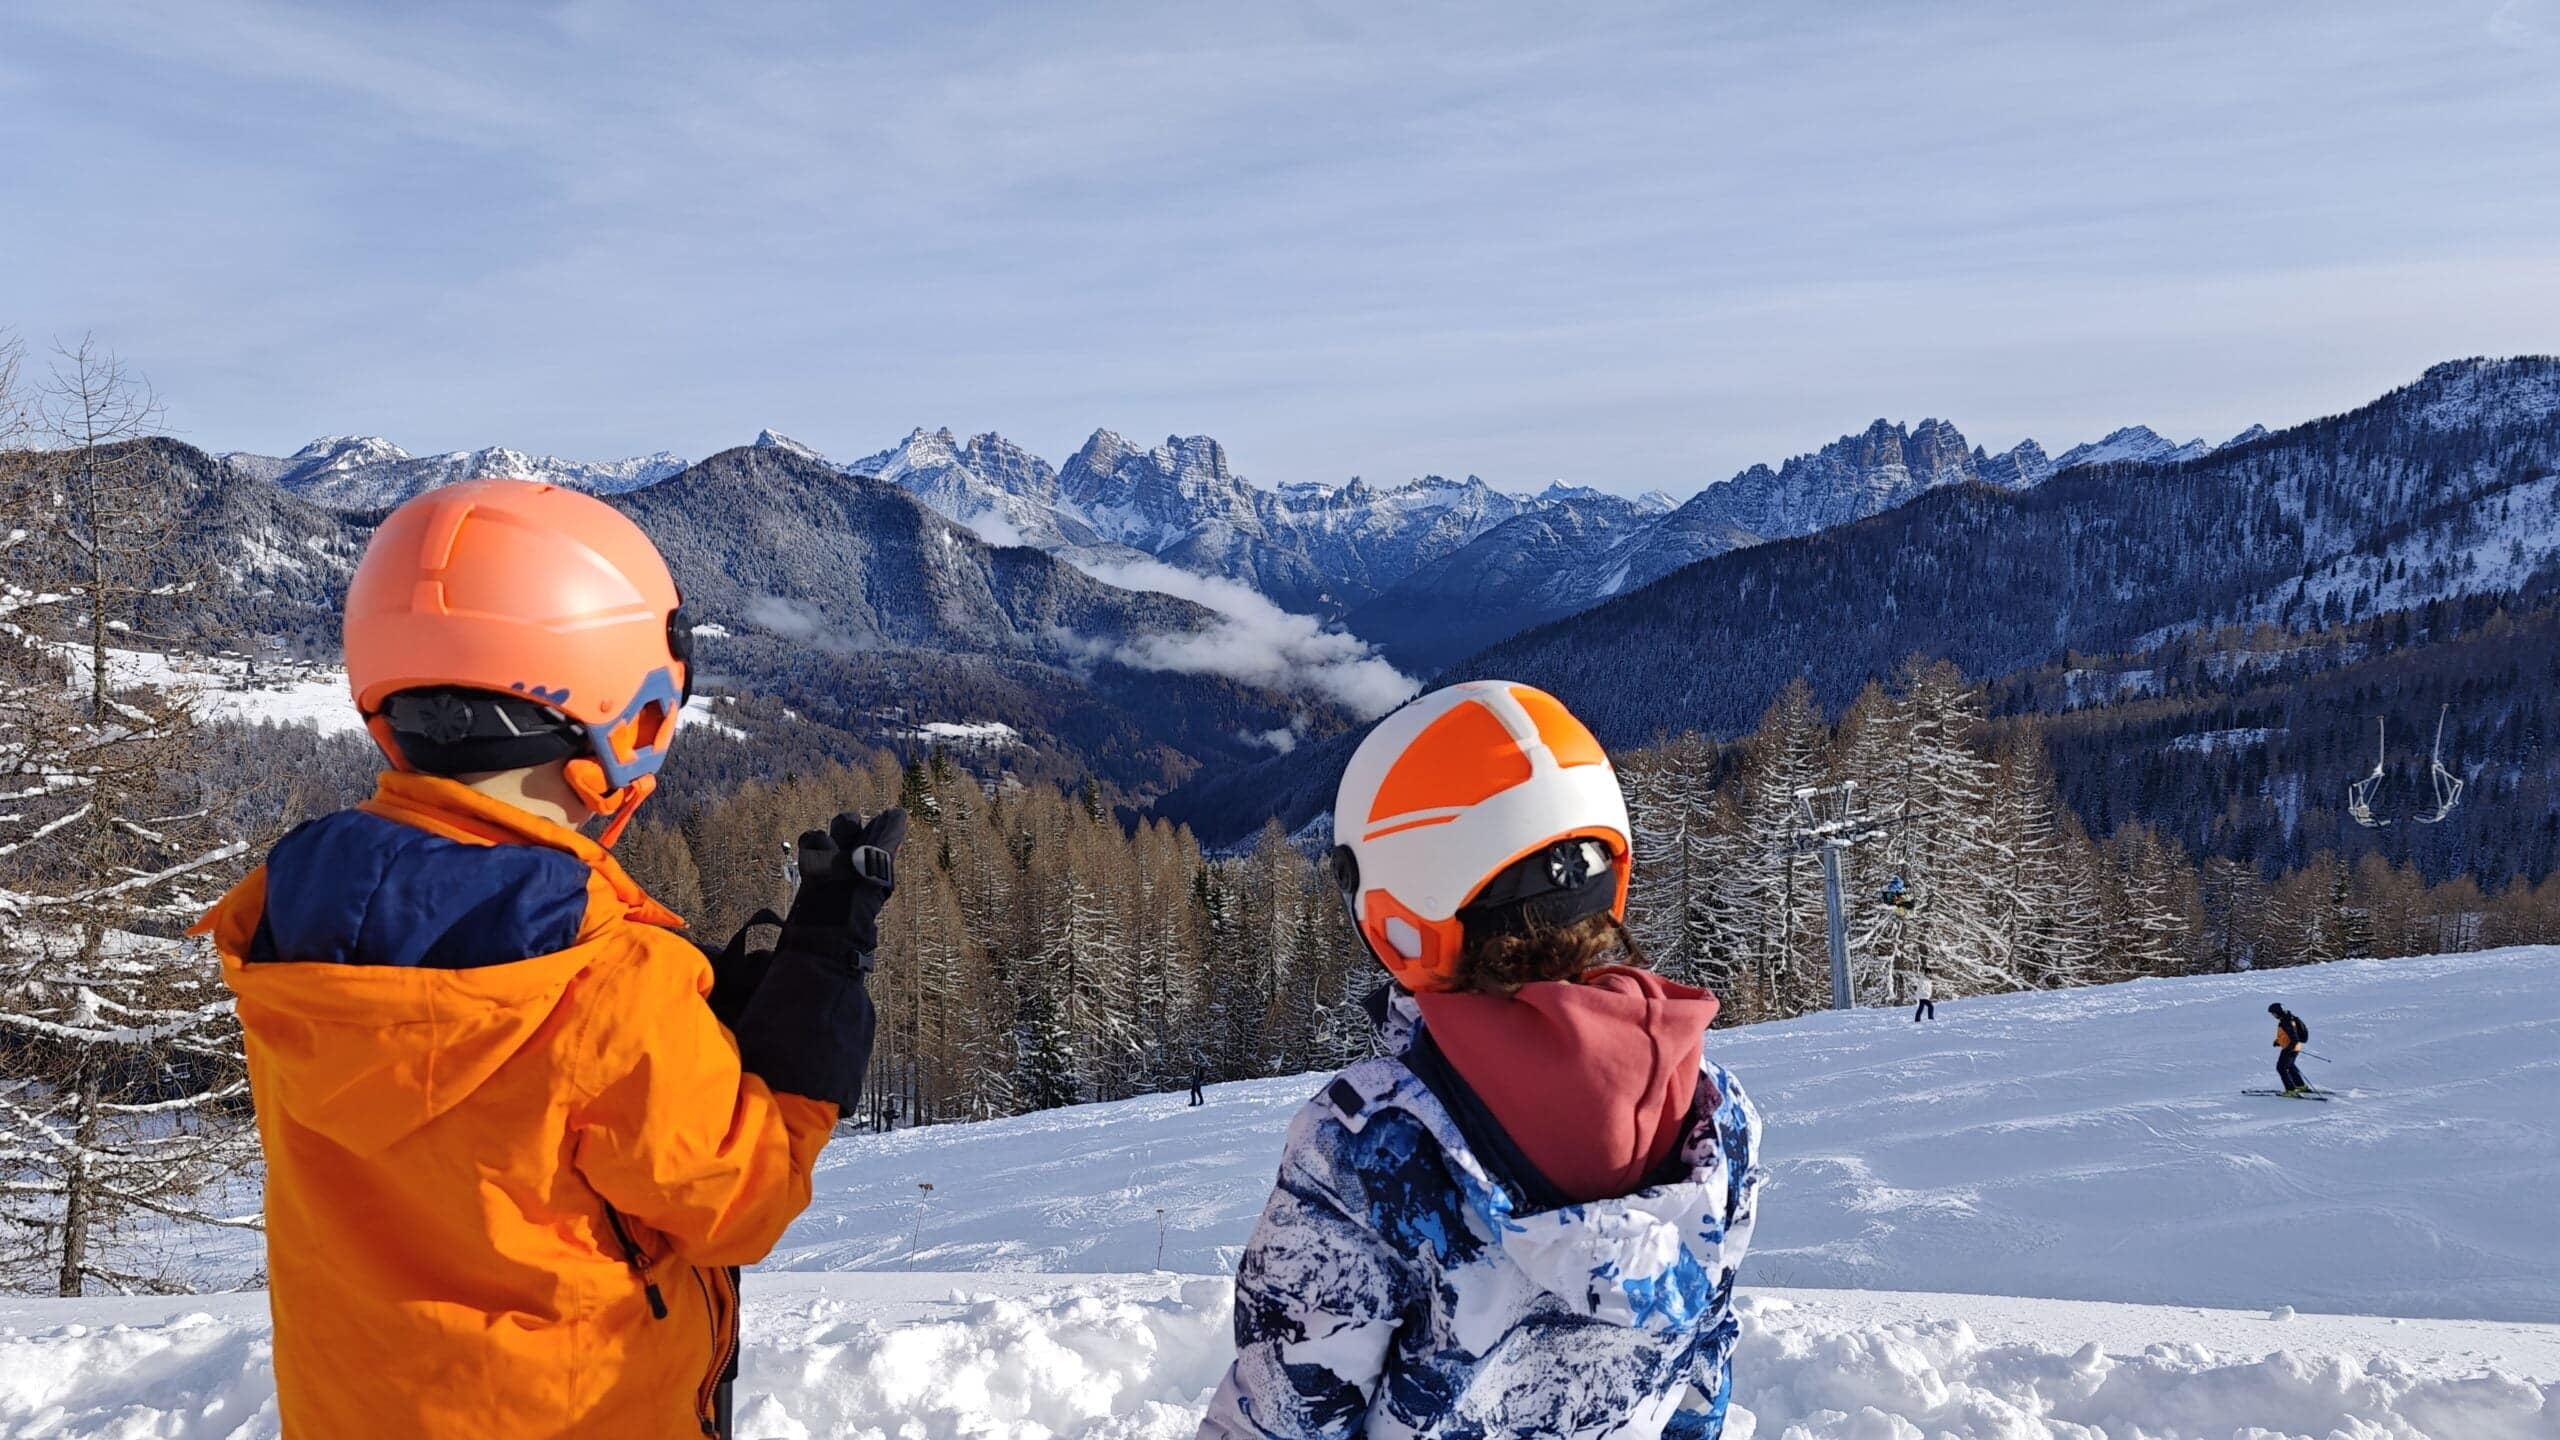 Lesen Sie mehr über den Artikel „Atmen Sie die Dolomiten im Winter: Ein Familienausflug ins Val di Zoldo“.